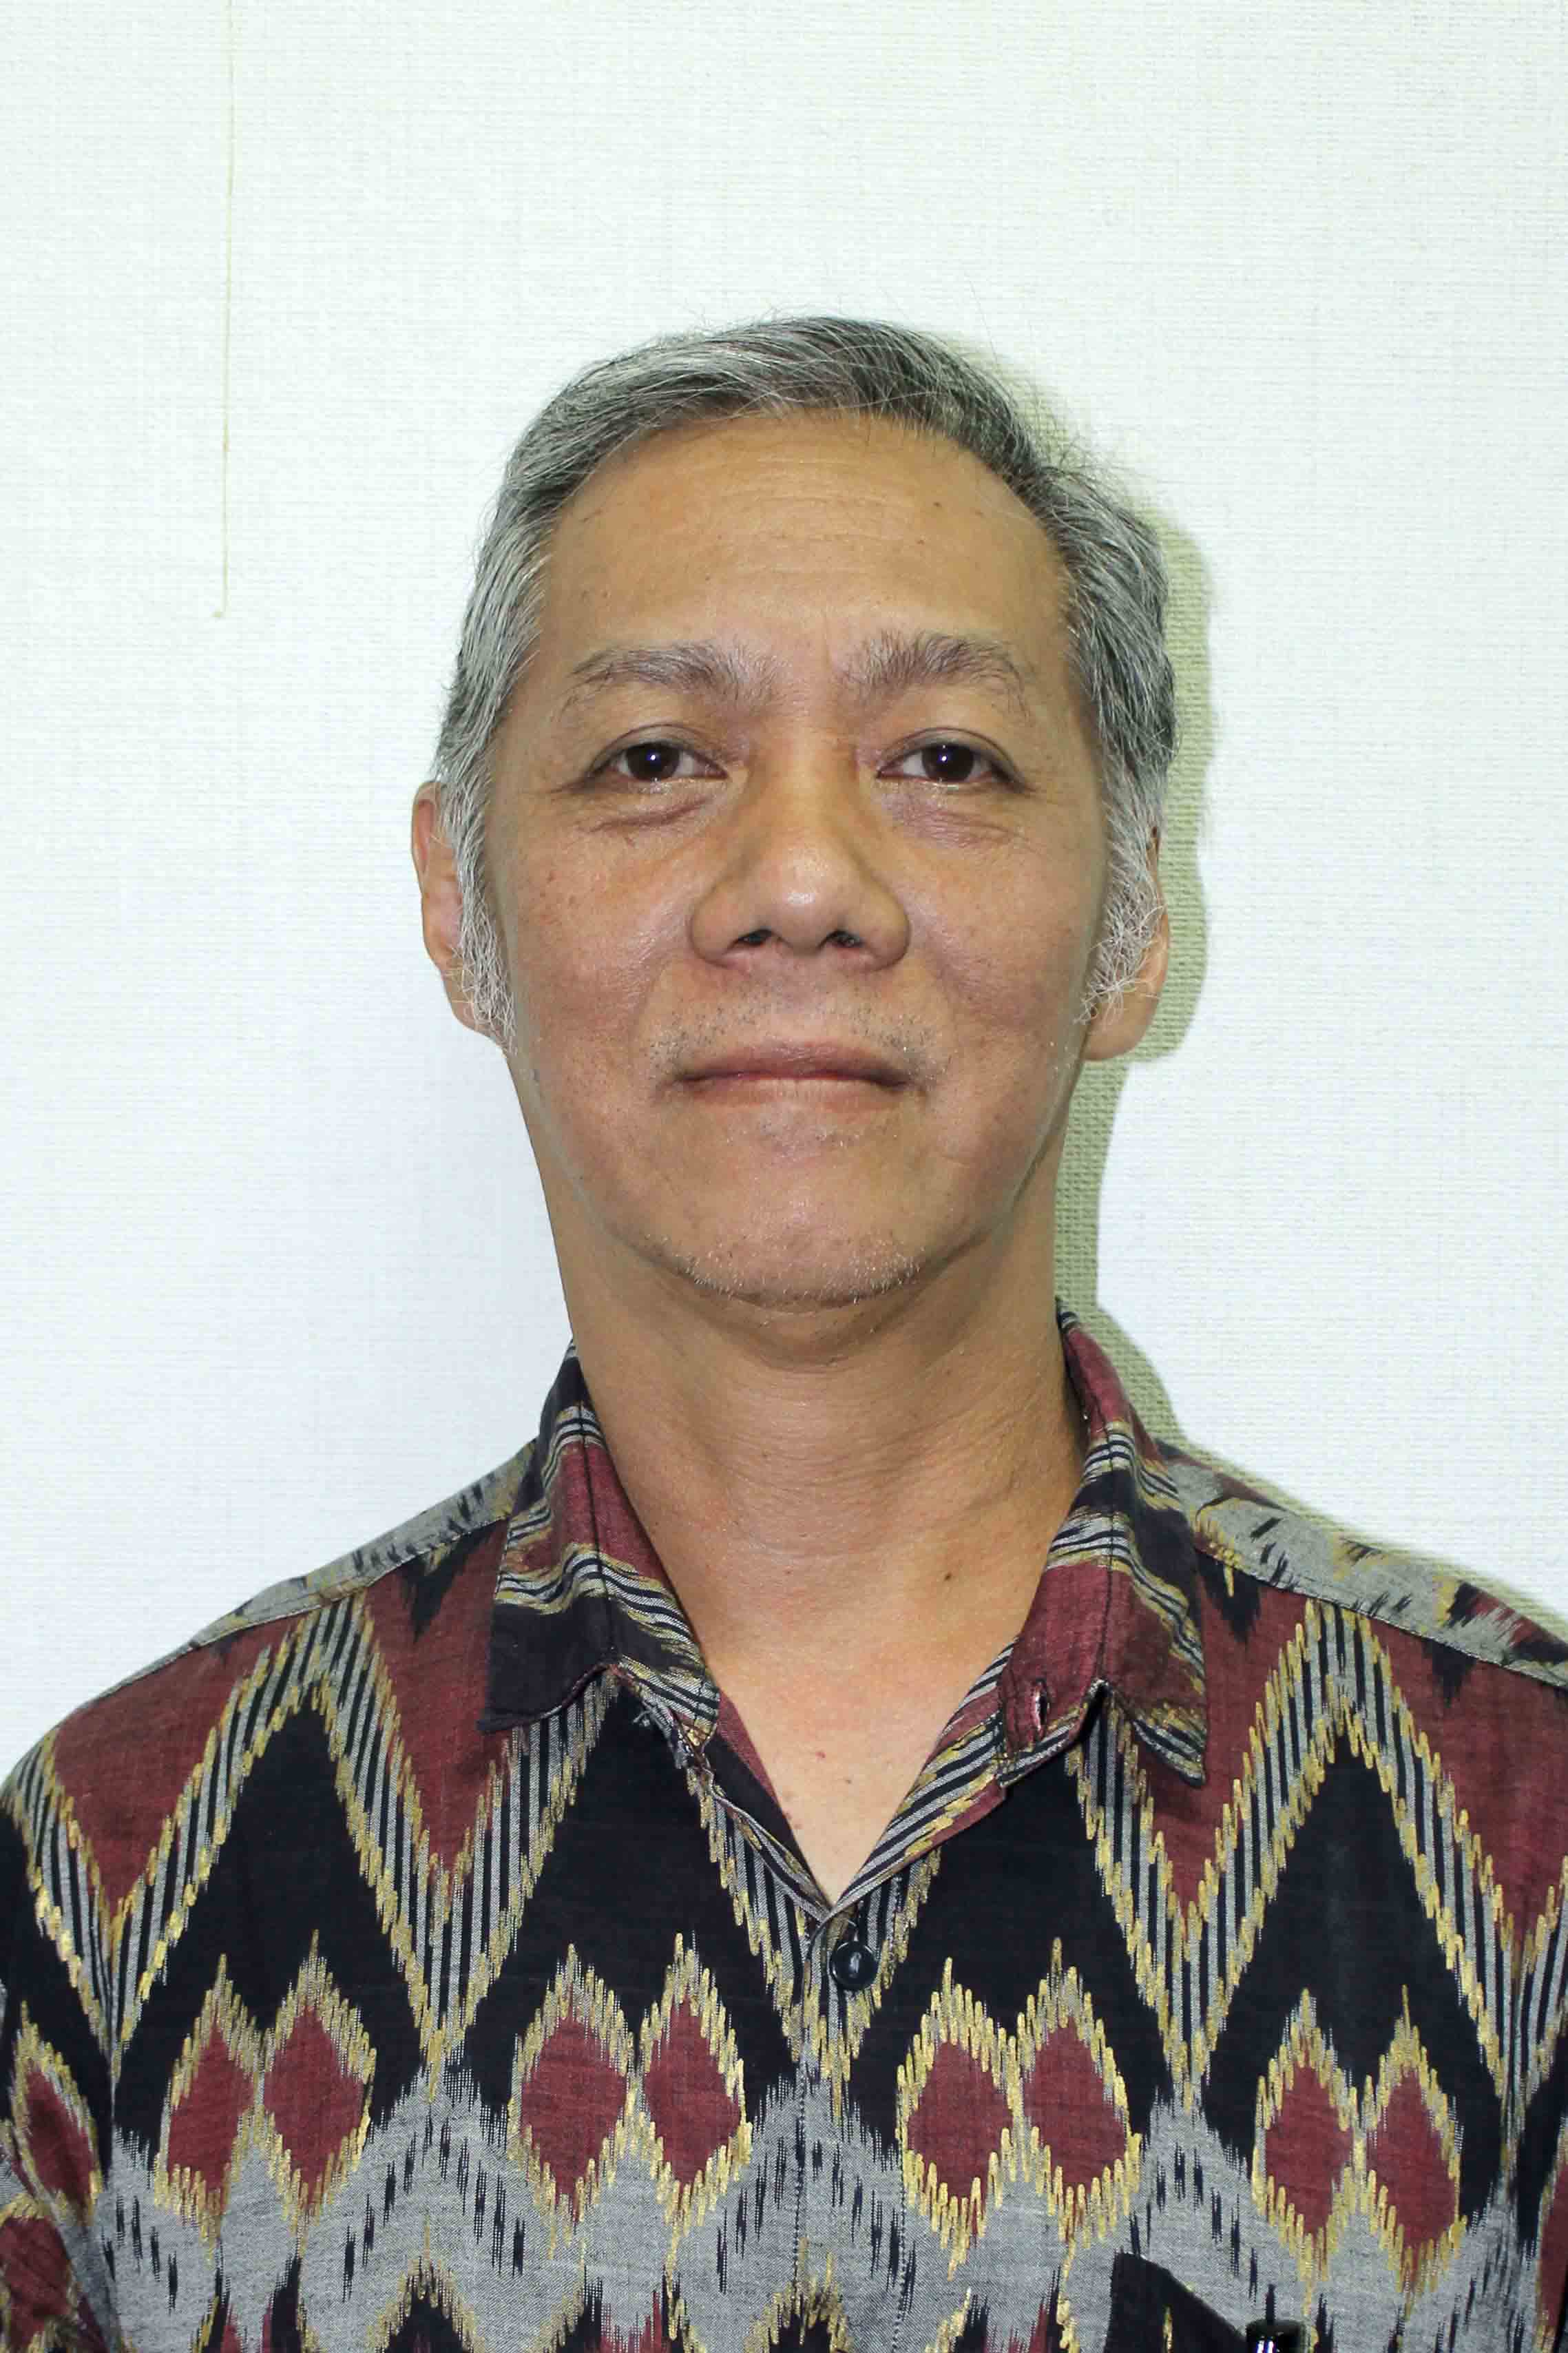 prof-djoko-t-iskandar-menjadi-saksi-keanekaragaman-indonesia